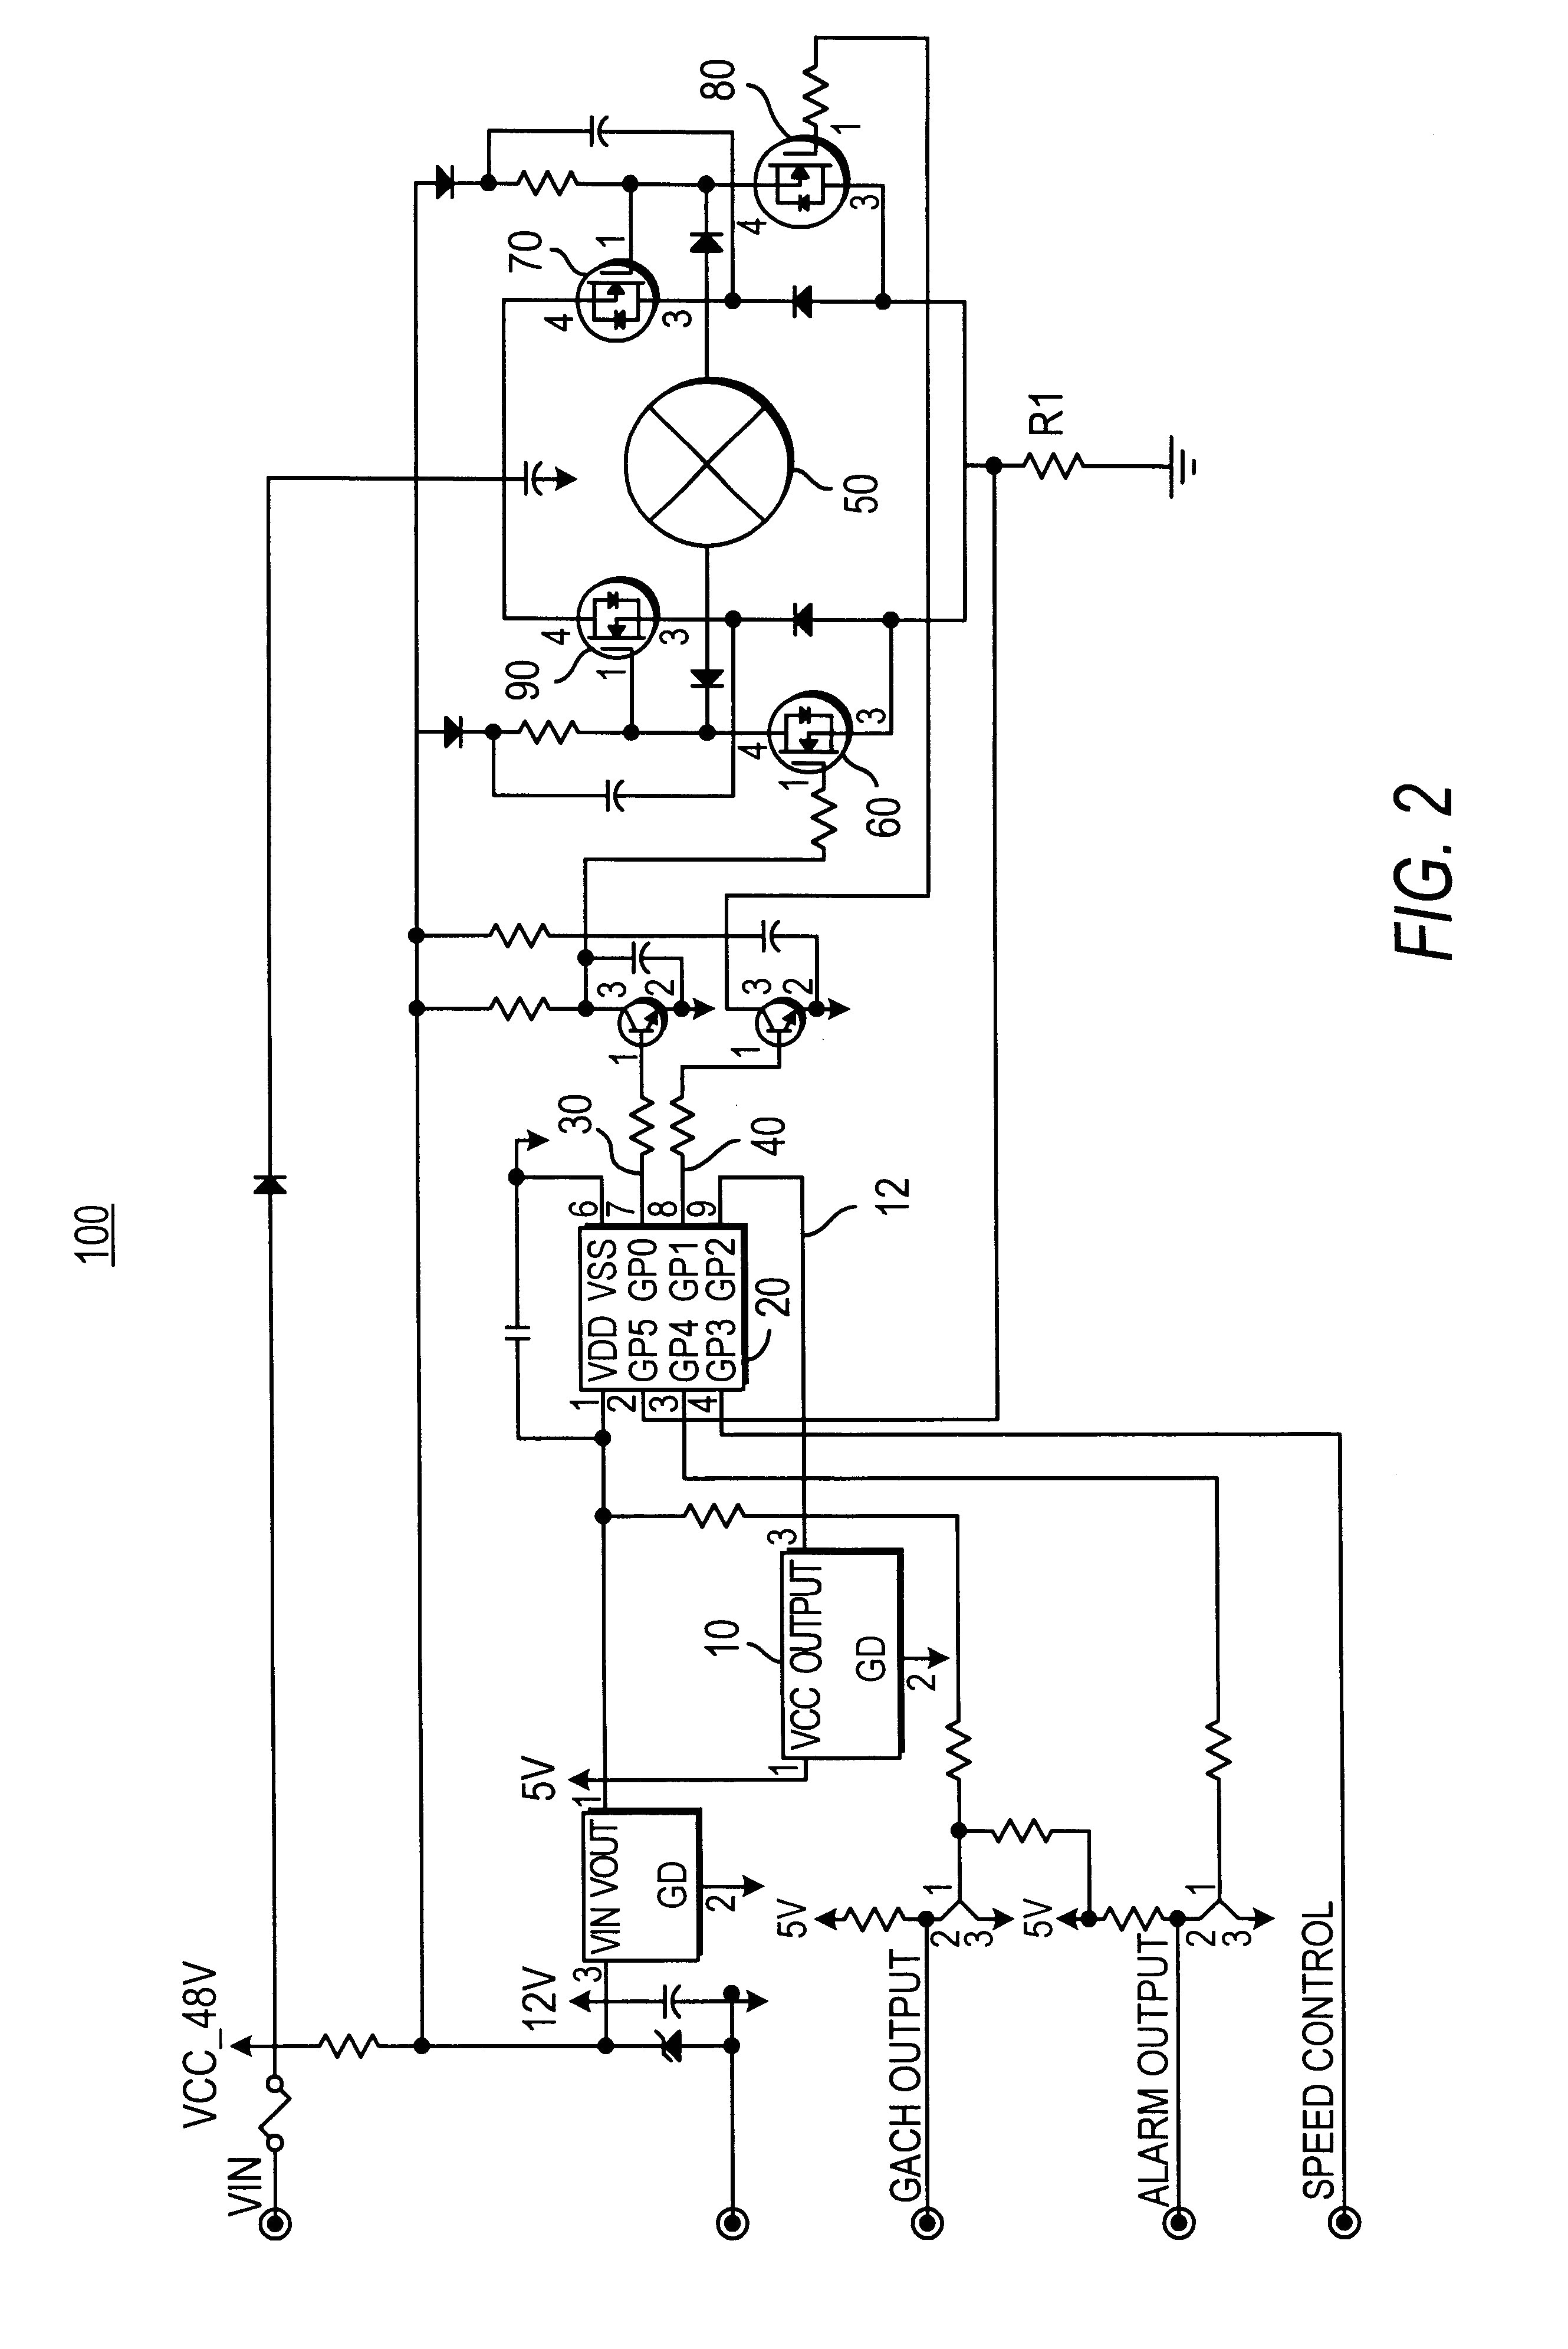 eaton 3 phase starter wiring diagram wiring diagrammotor starter hand off auto wiring diagram wiring libraryeaton